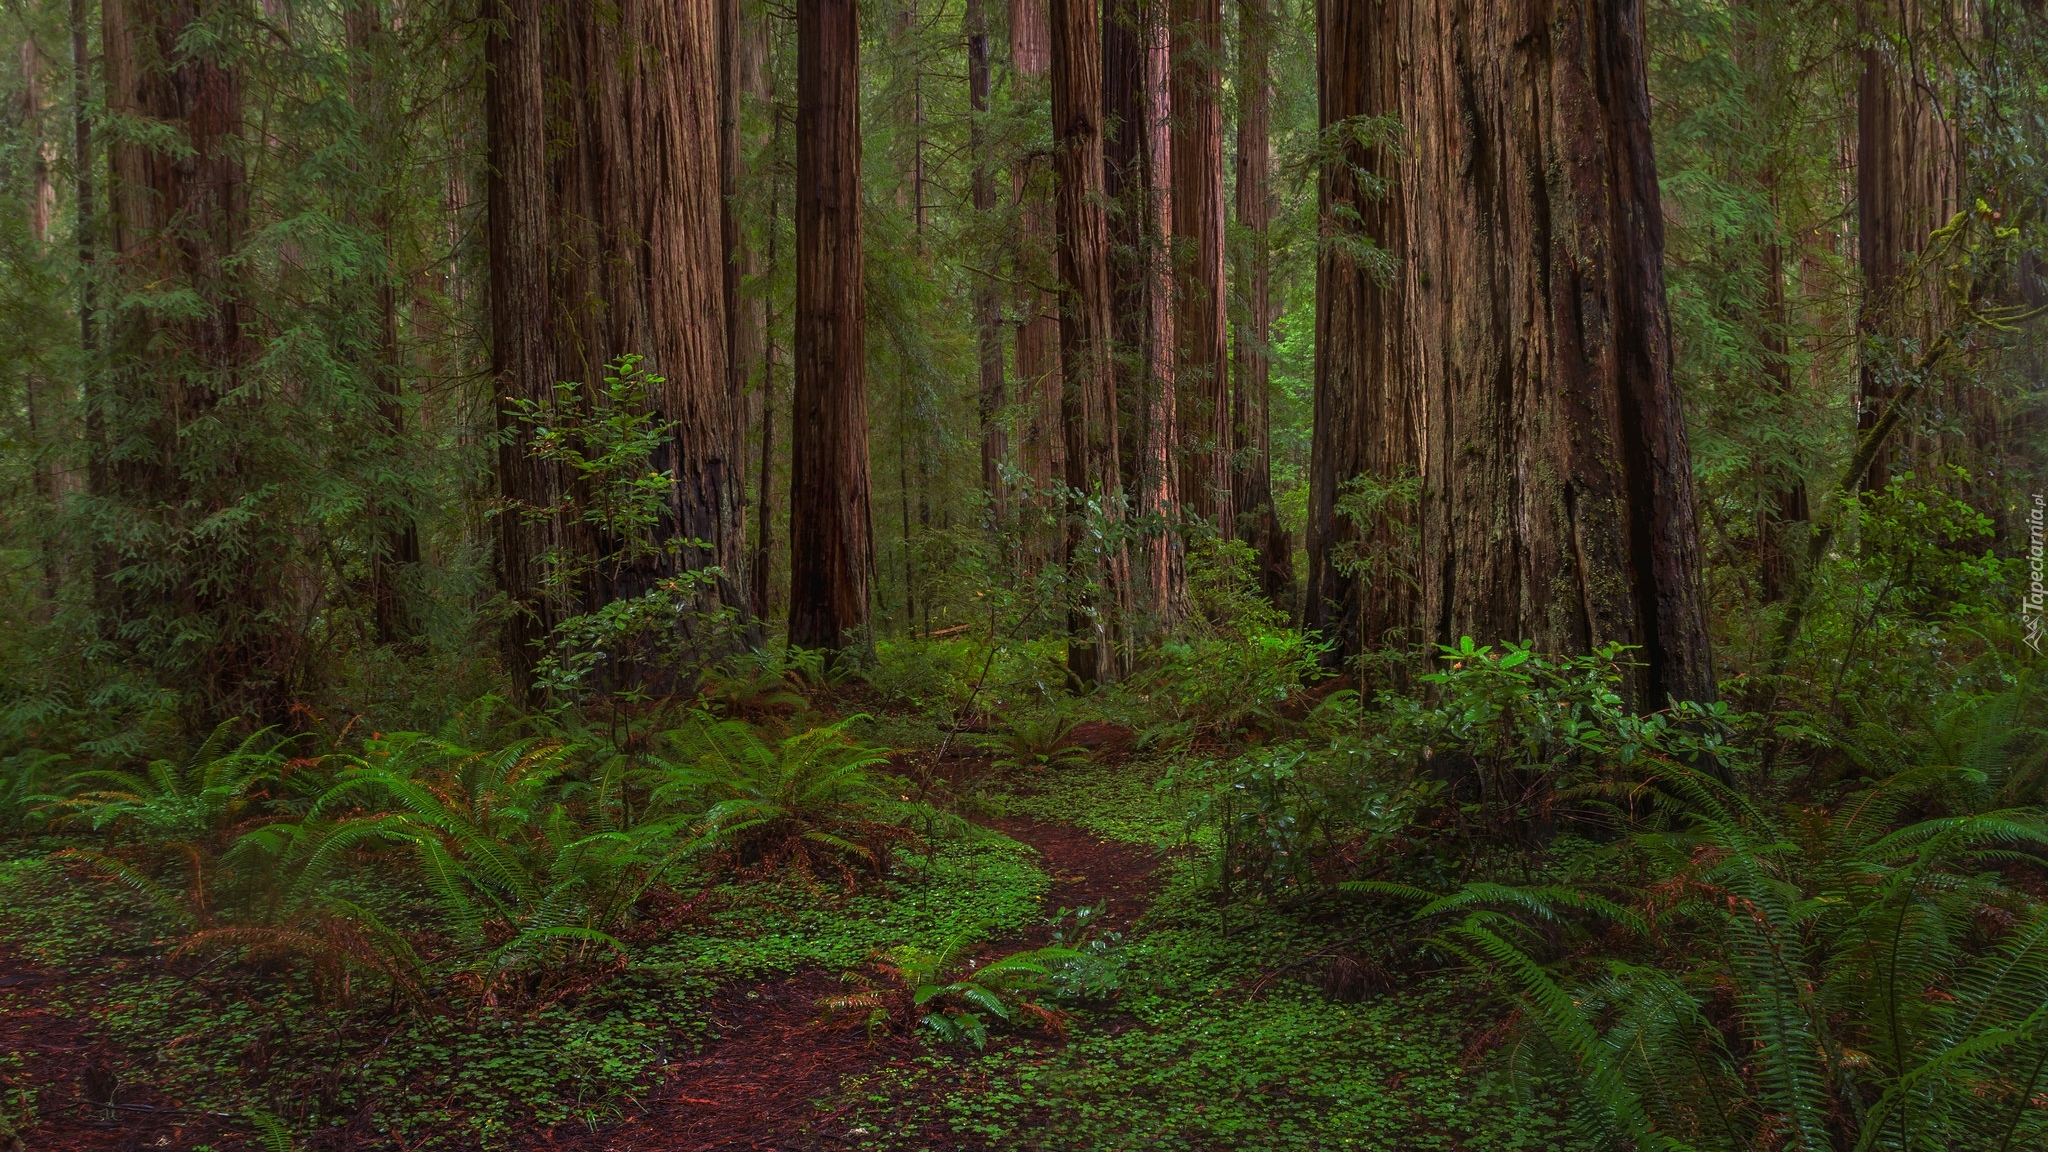 Las, Drzewa, Sekwoje, Pnie, Paprocie, Ścieżka, Park stanowy, Jedediah Smith Redwoods, Kalifornia, Stany Zjednoczone